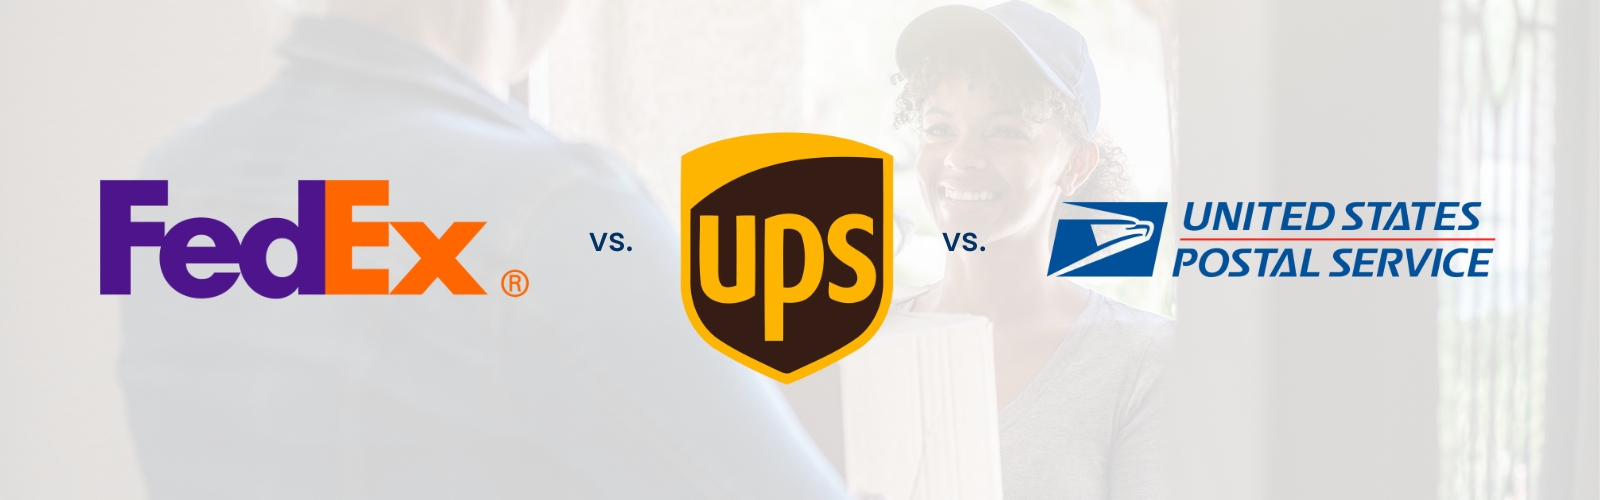 FedEx vs UPS vs USPS: Compare Delivery Times